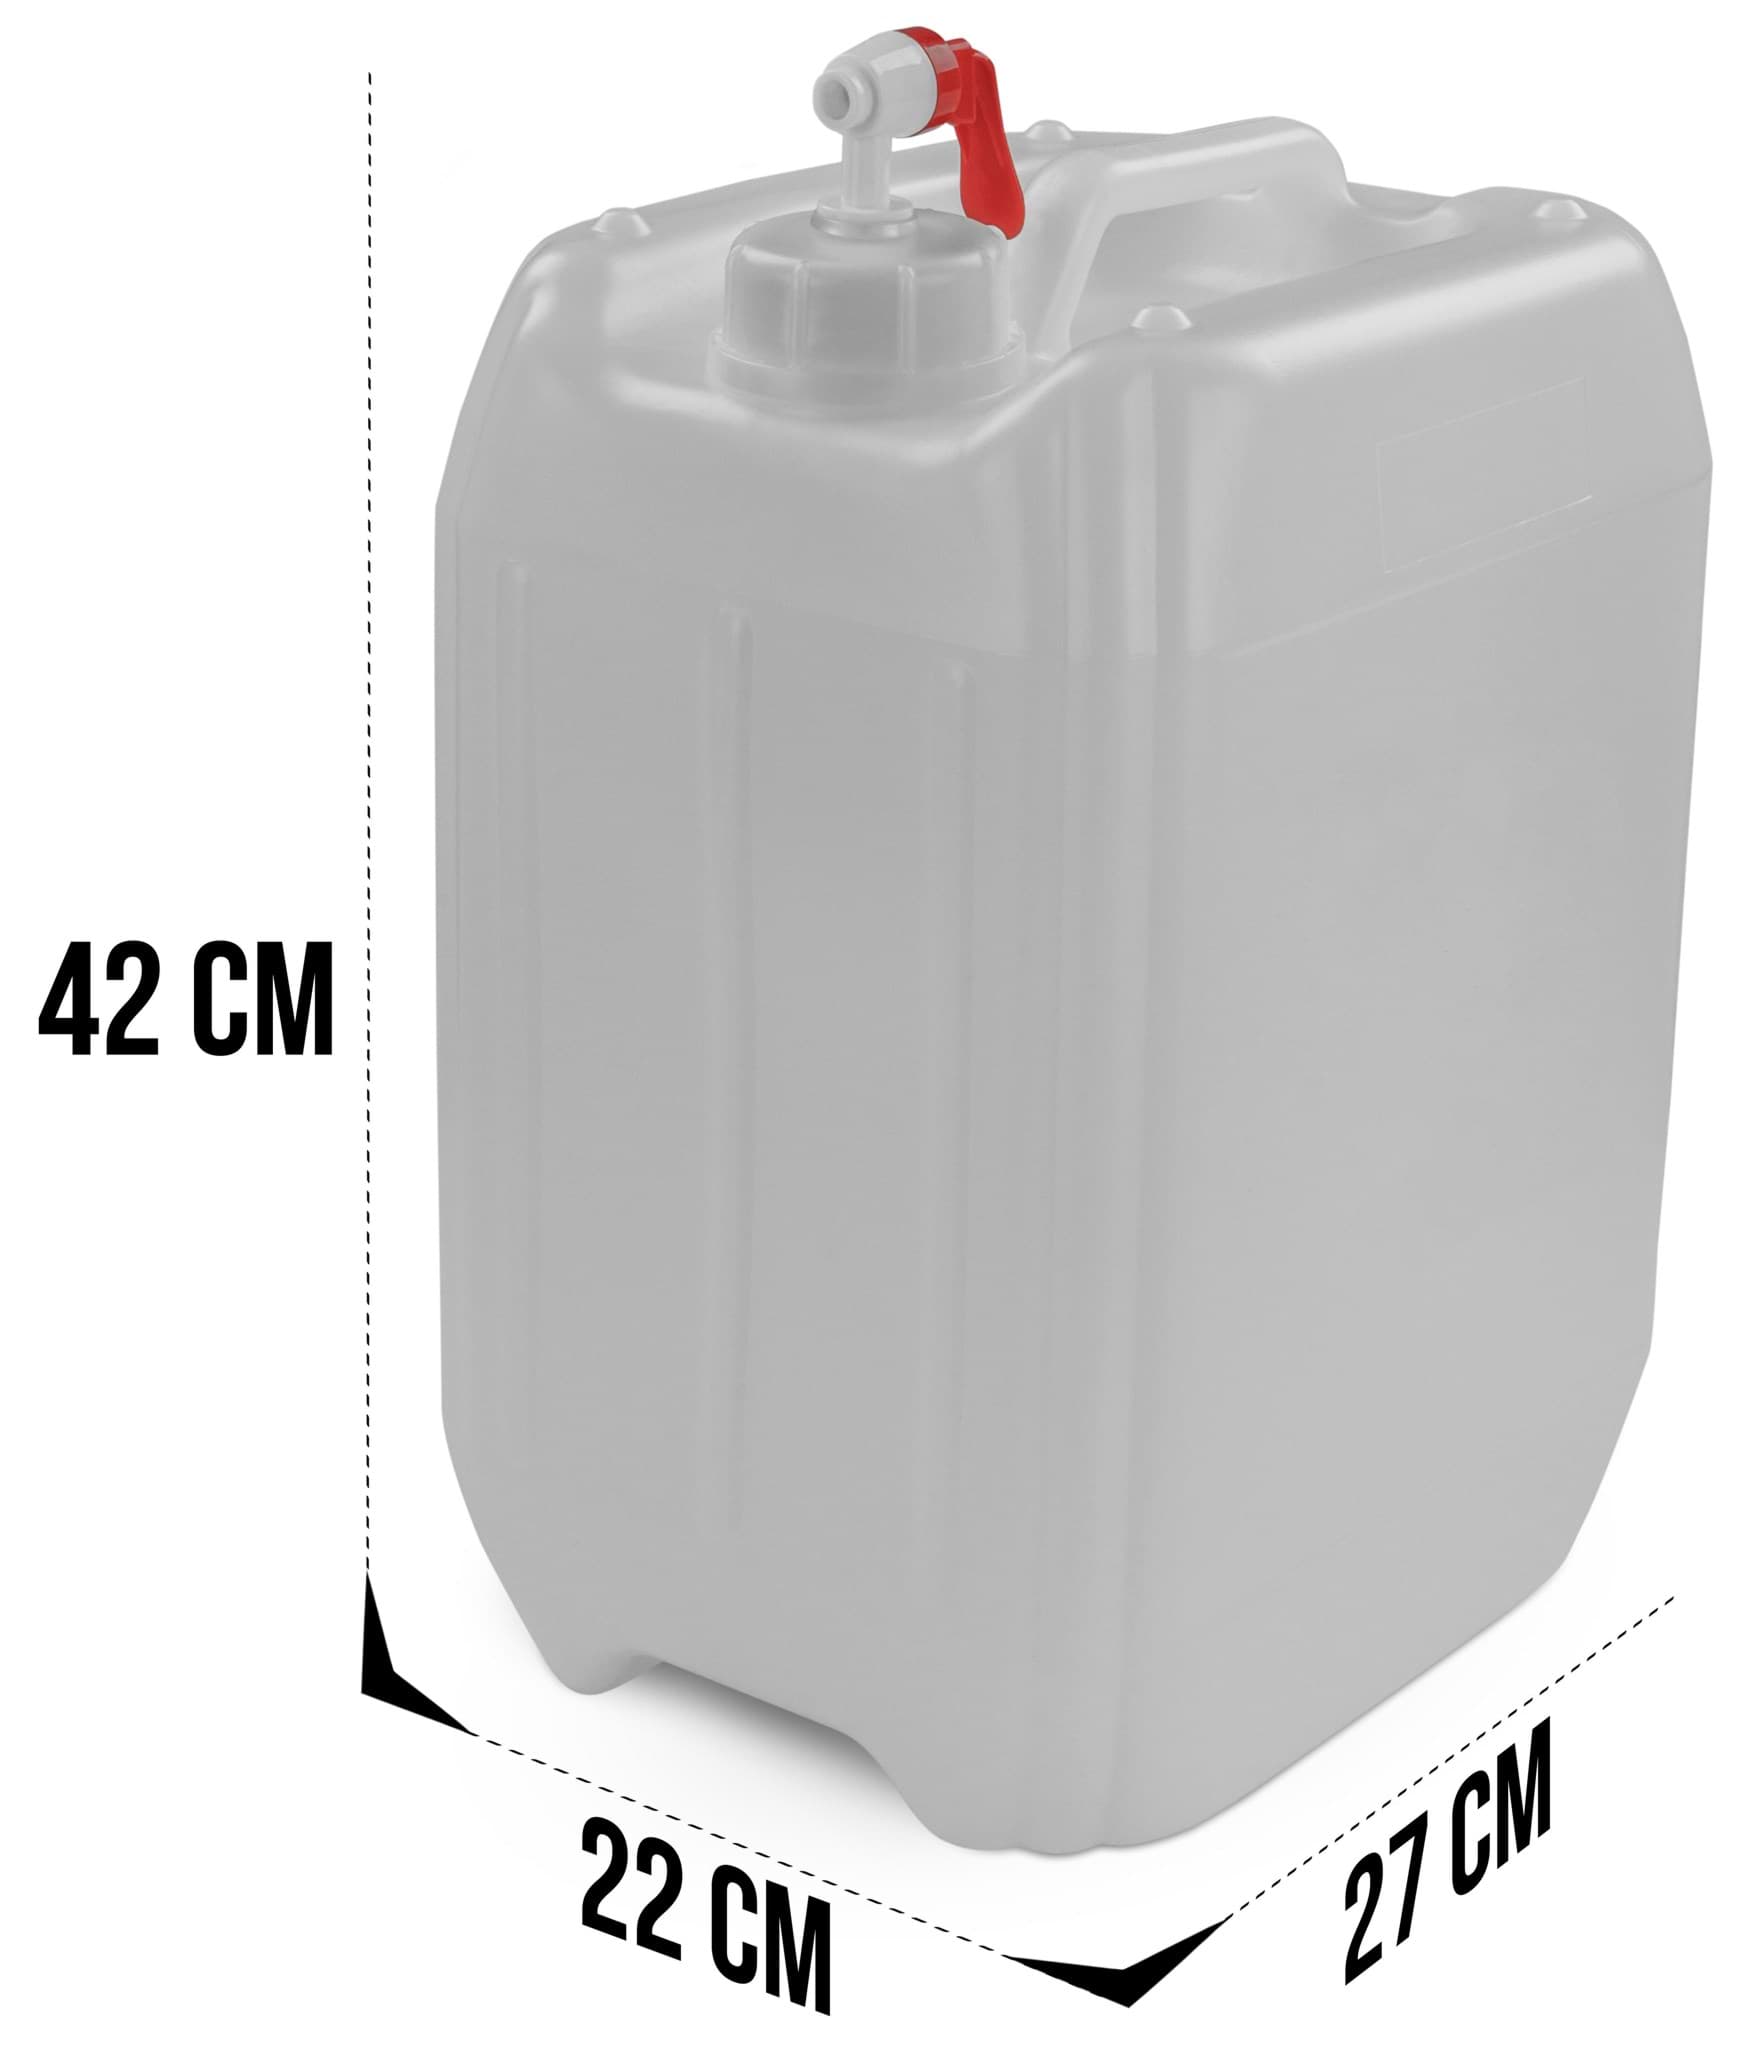 normani Kanister Wasserkanister Carry 10 Liter (1 St